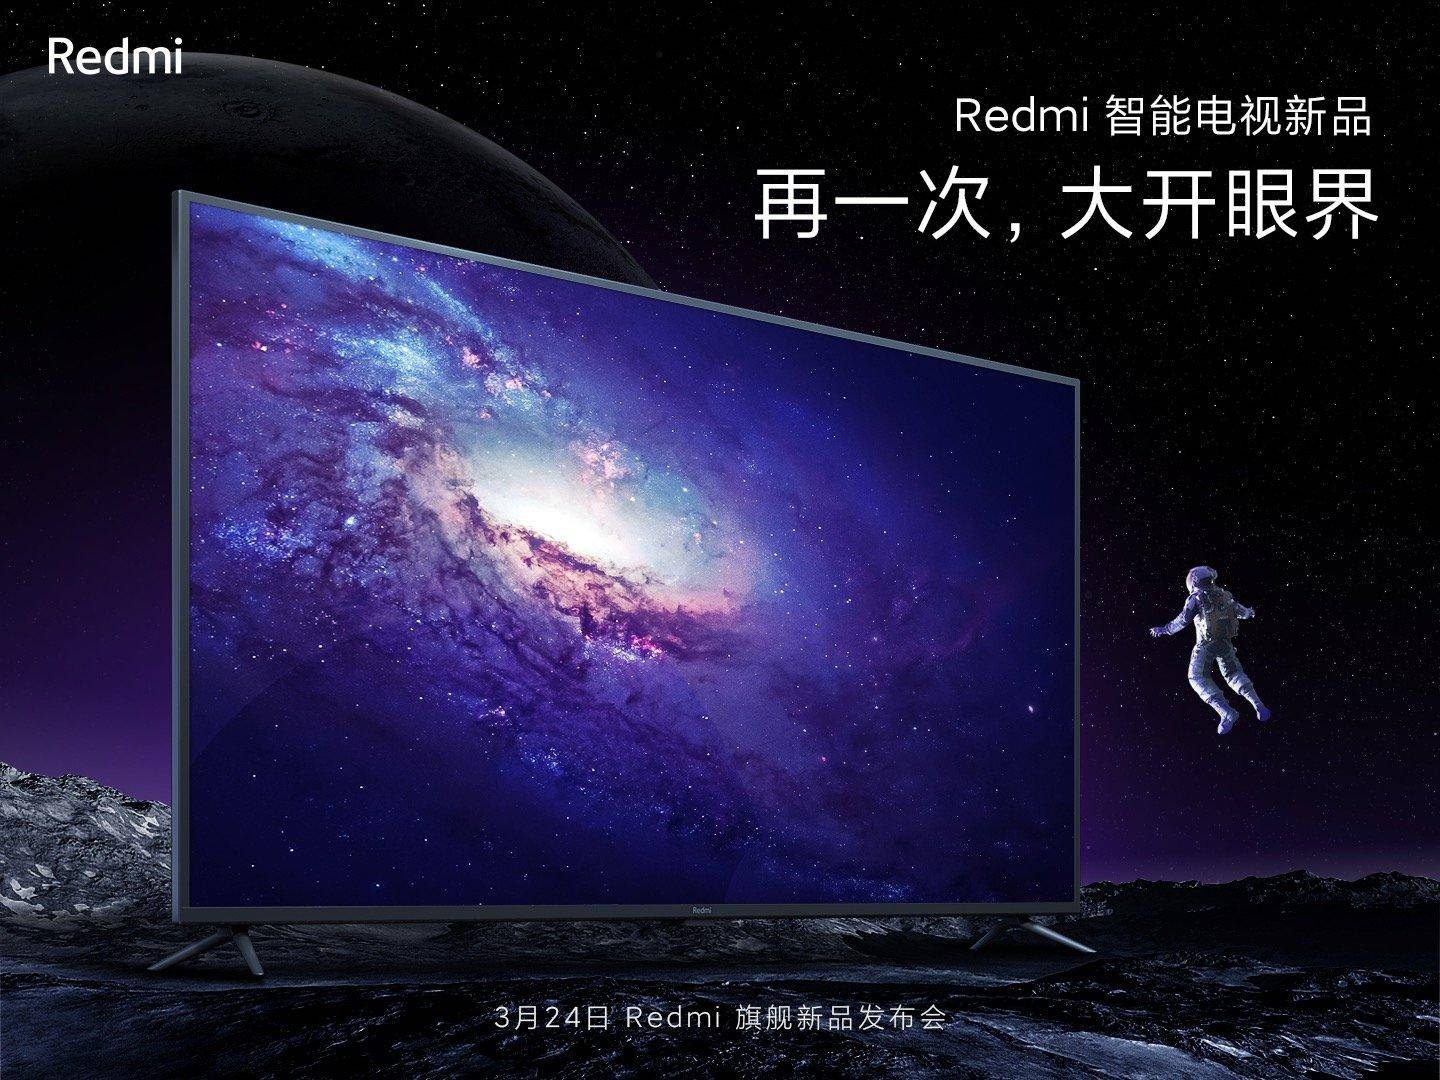 更宽屏幕+更窄边框 Redmi新款电视引期待